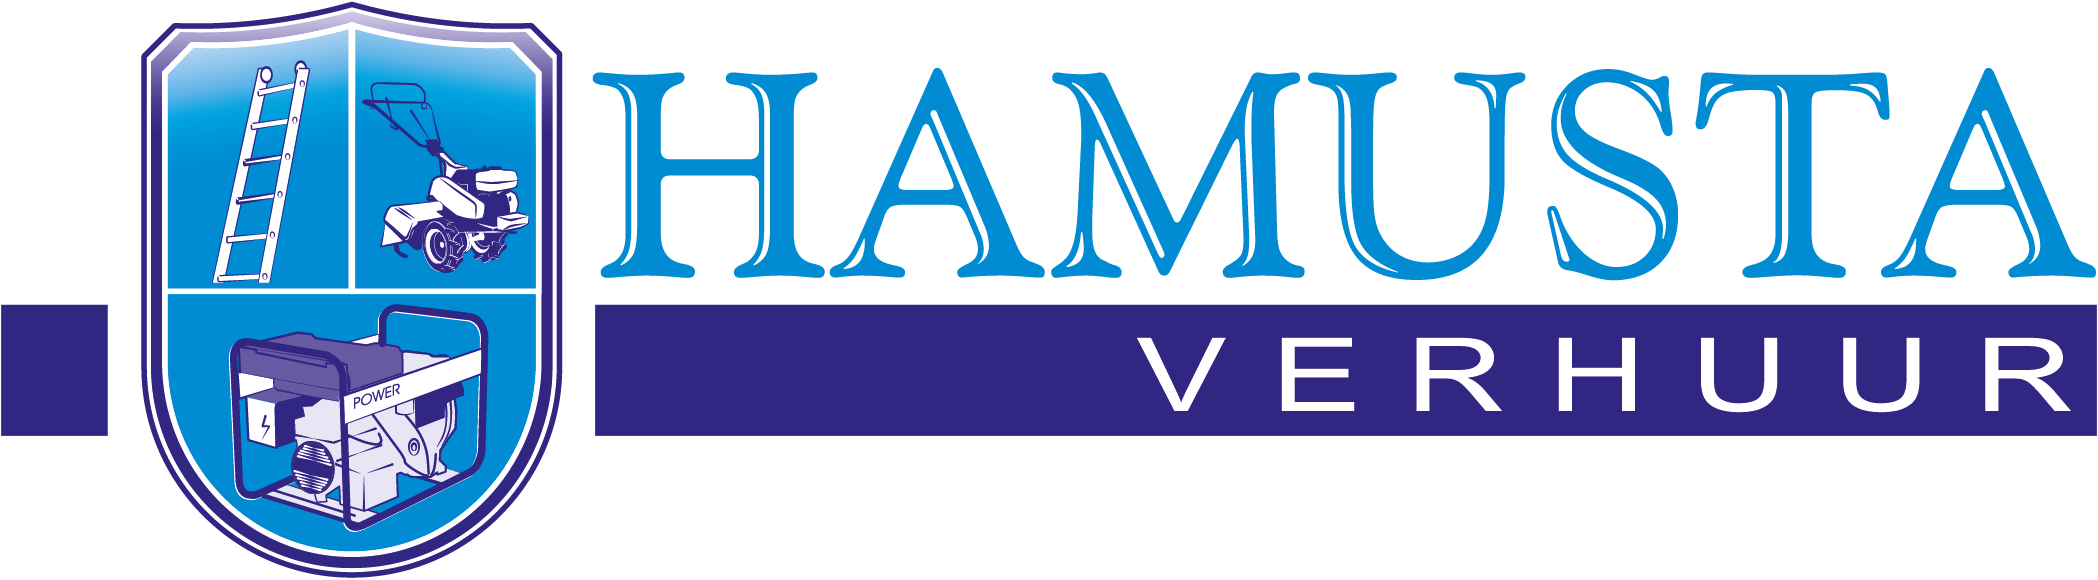 Logo Hamusta Verhuur